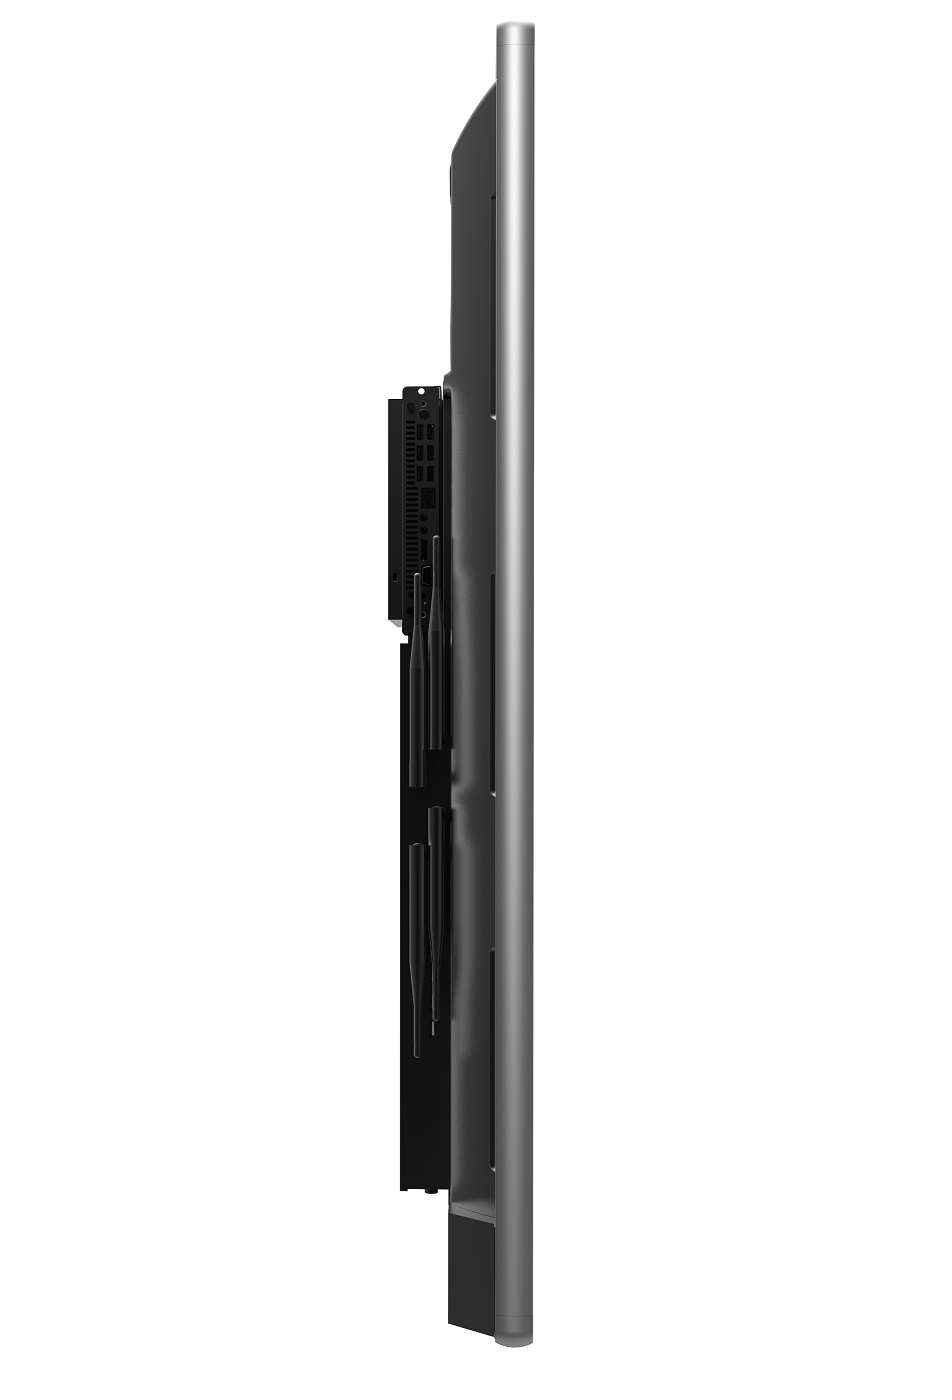 Horion 65M3A - 65'' интерактивная ЖК-панель, 4К, мультитач 20 касаний